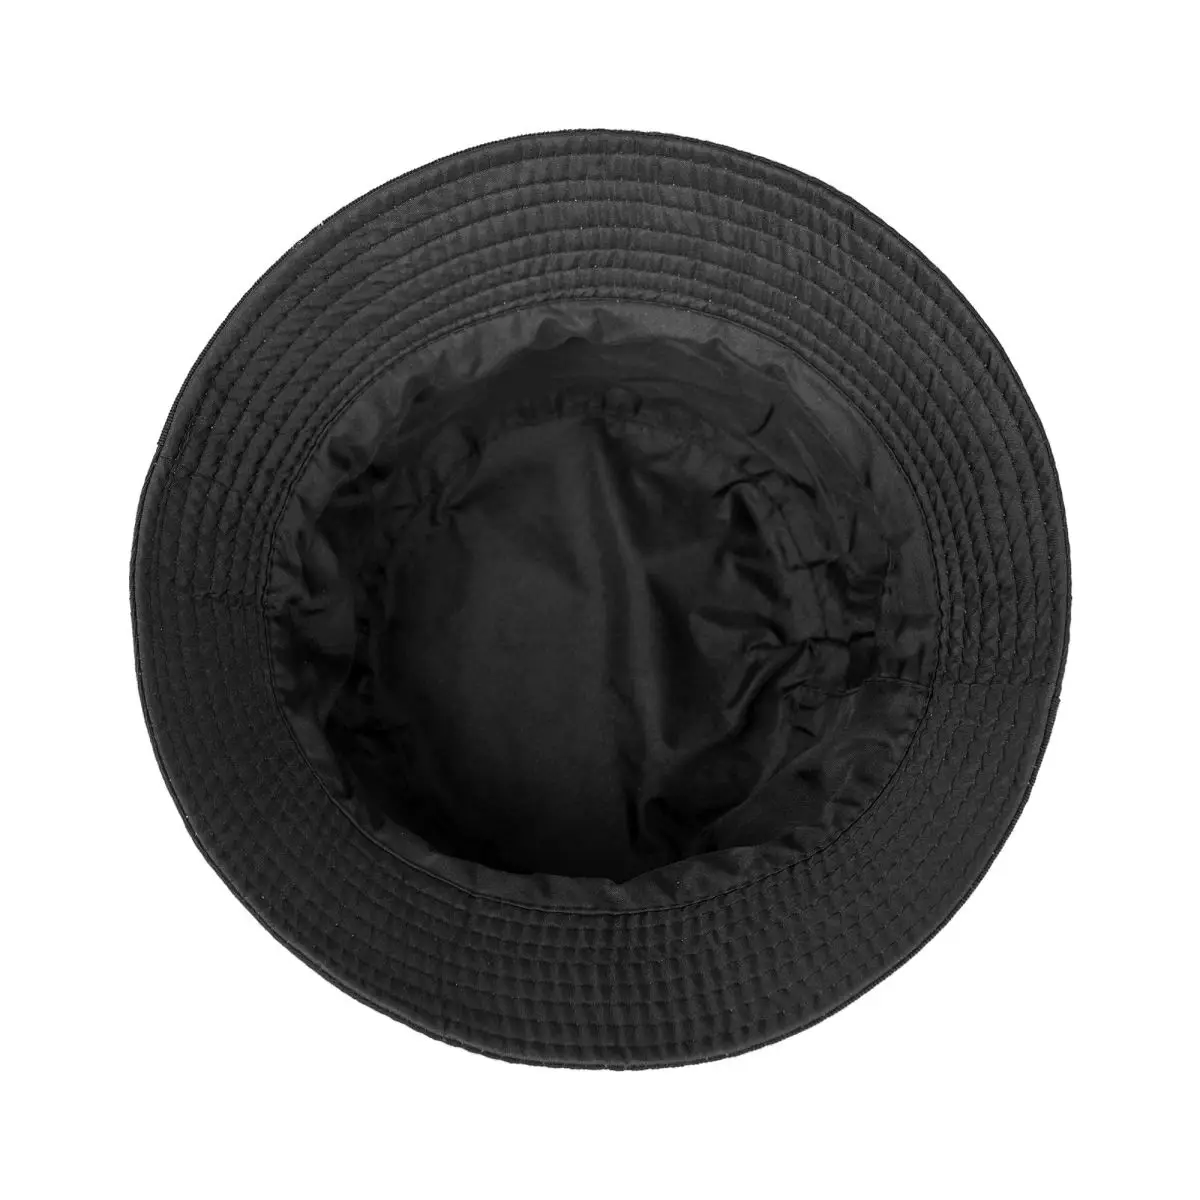 Noul Canal Mixtape Găleată Pălărie Brand Om Capace Șapcă de Pescuit Capace de Protecție Uv Solar Pălărie Pălărie de sex Feminin pentru Bărbați